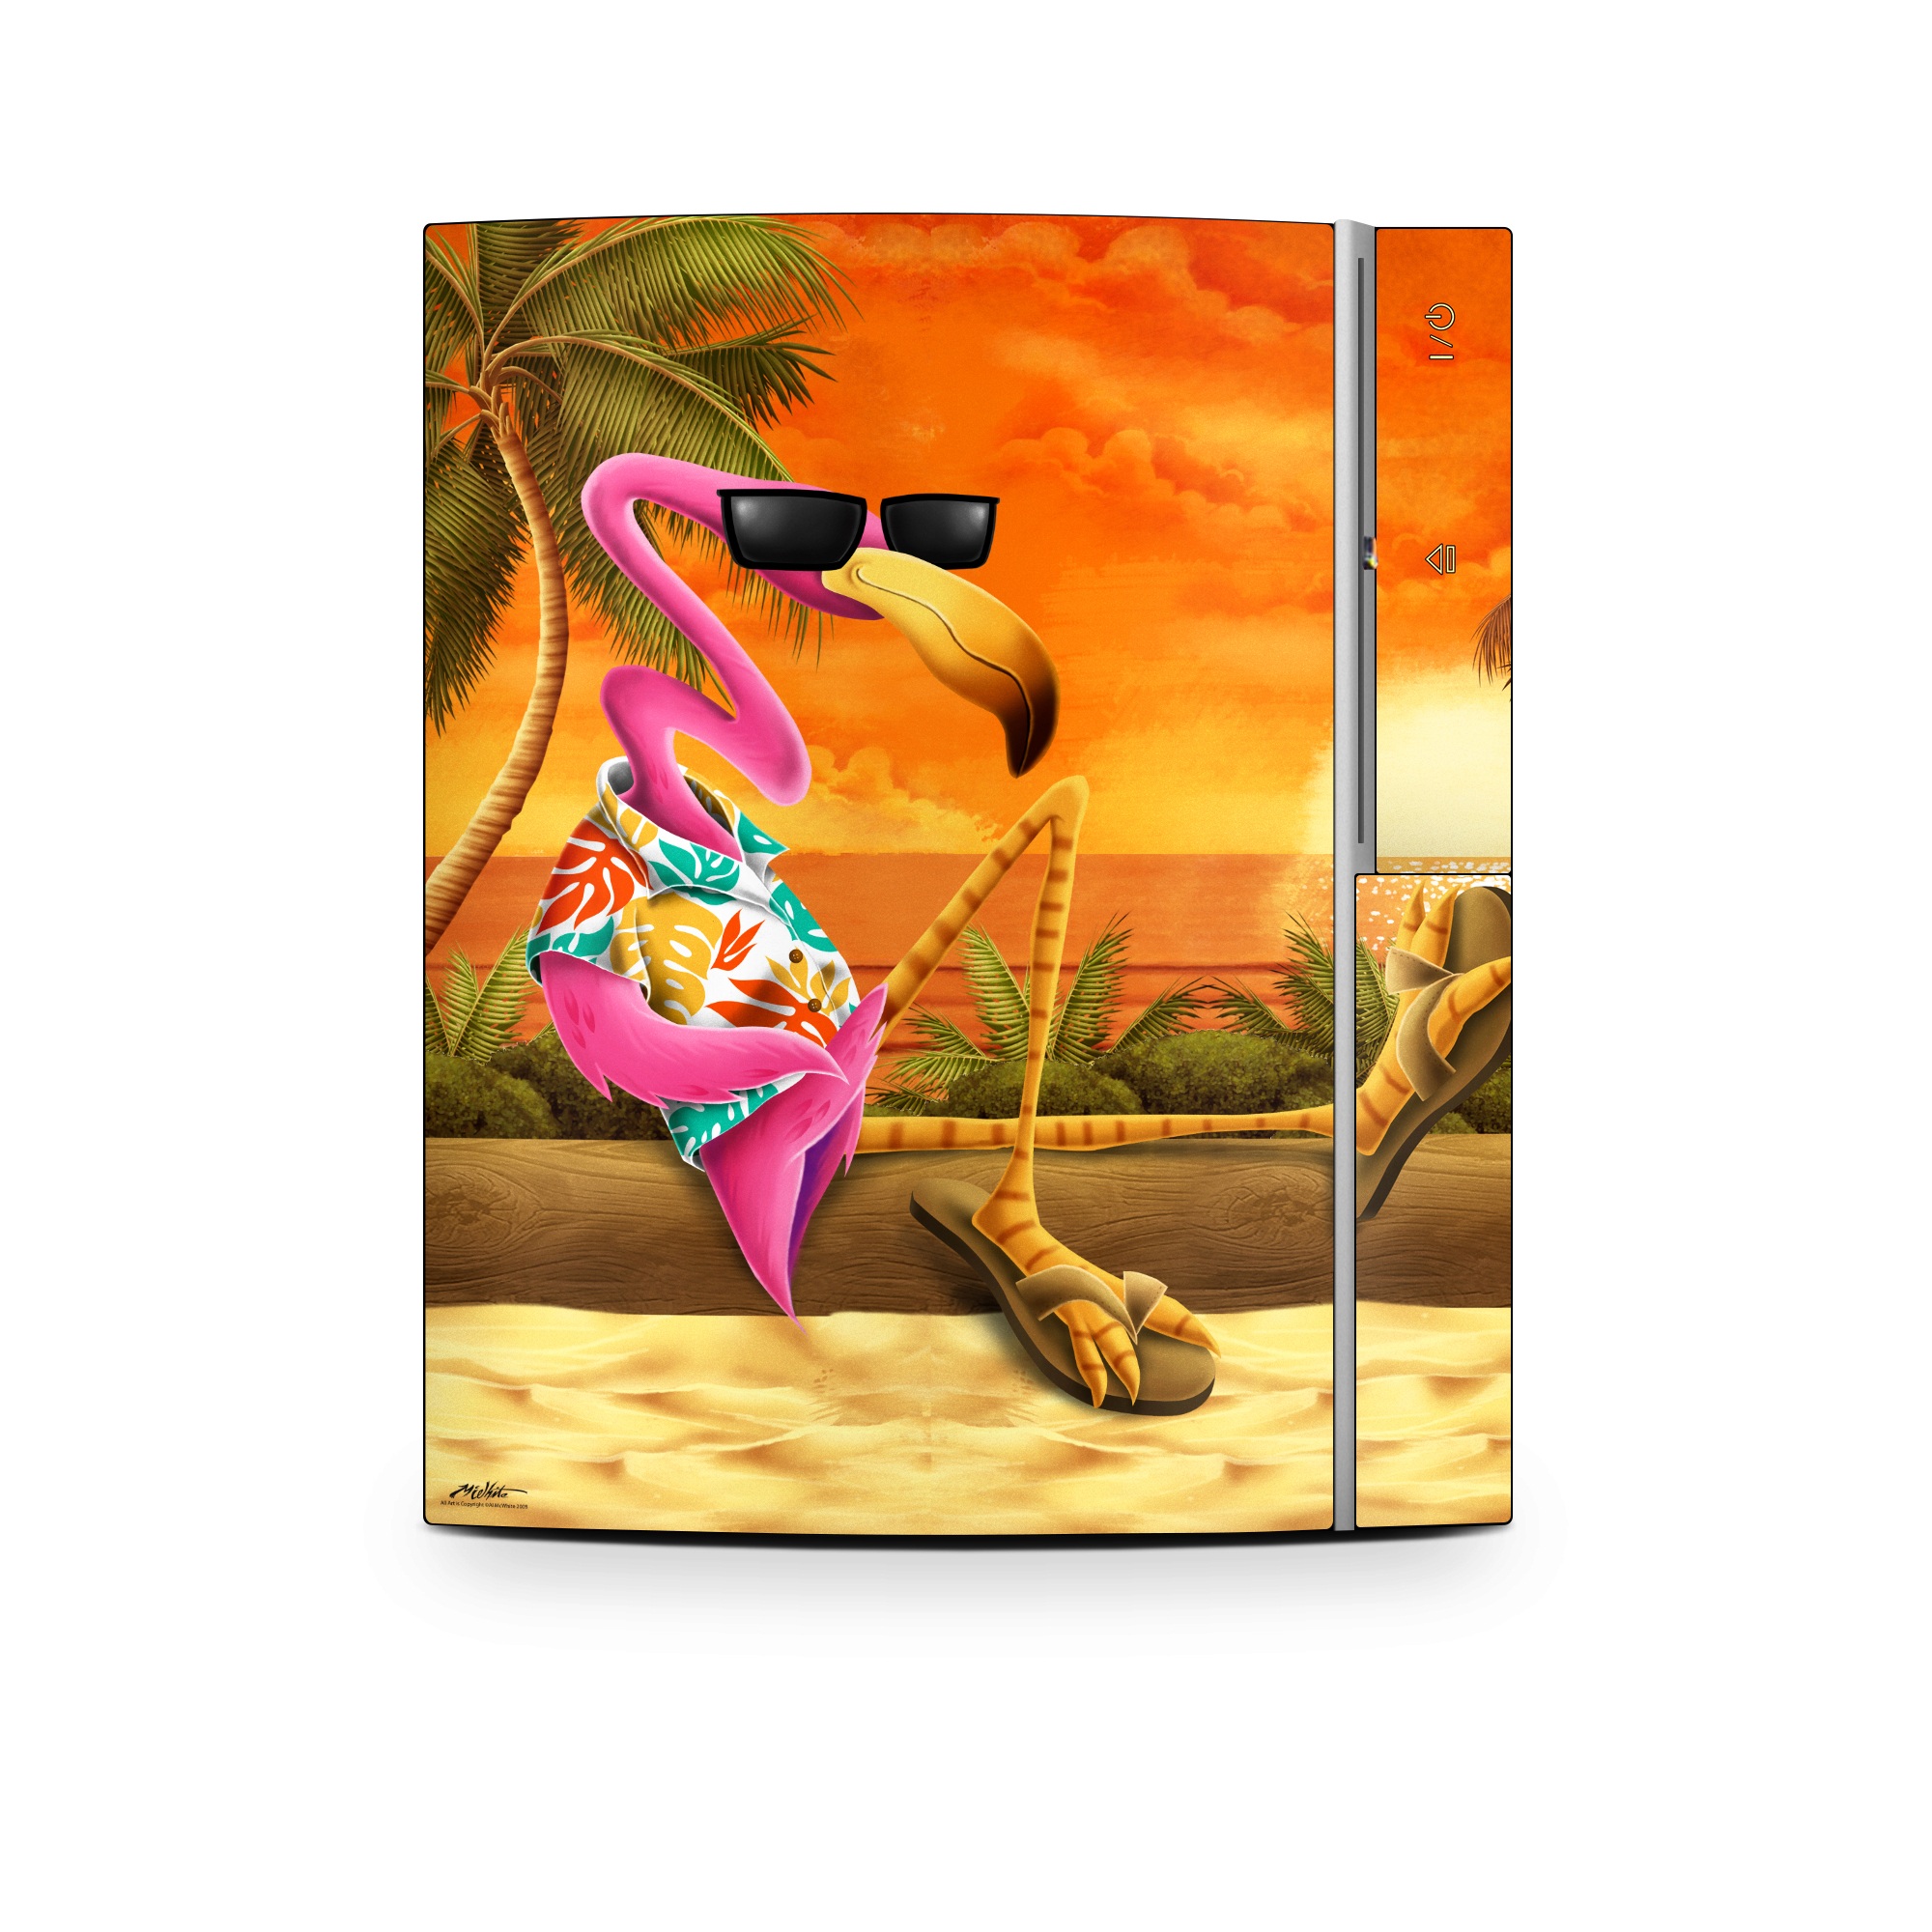 PS3 Skin - Sunset Flamingo (Image 1)